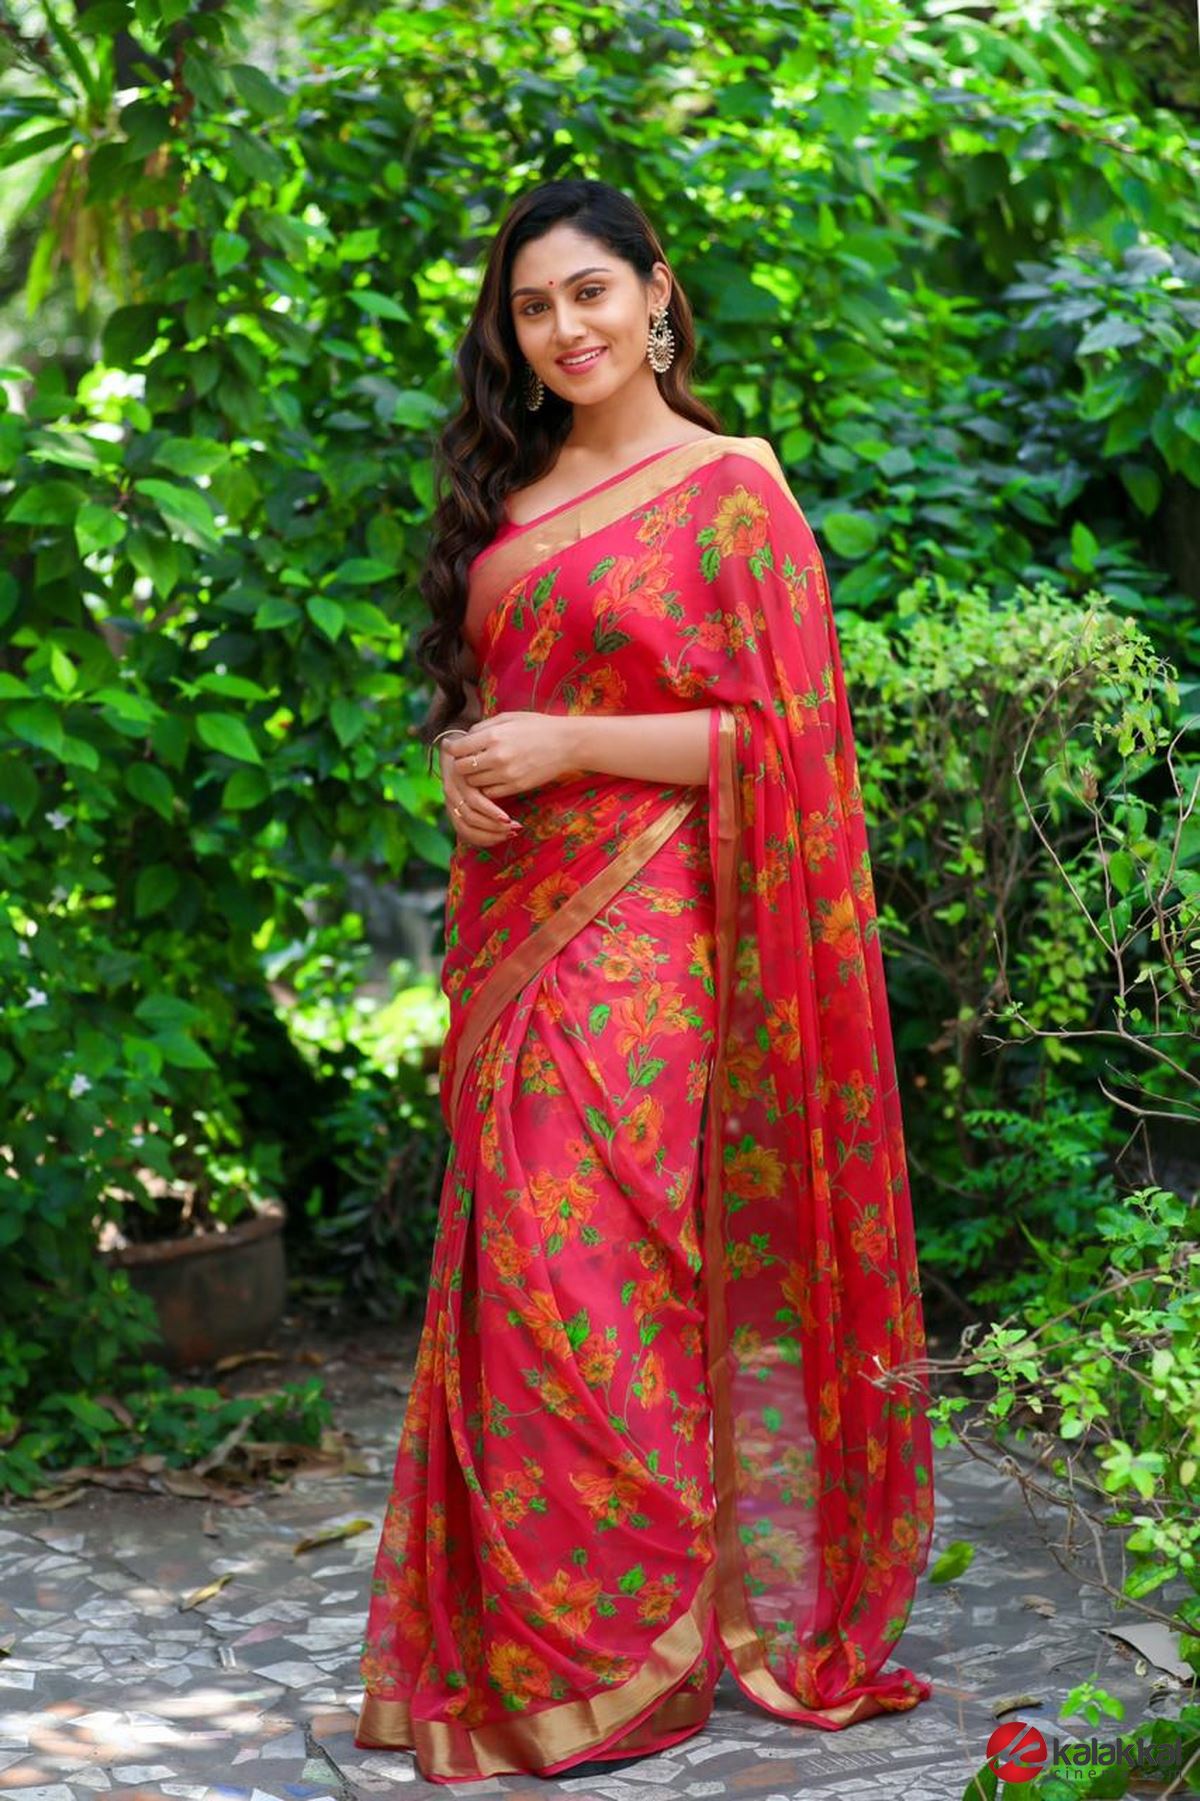 Actress Sreethu Photos